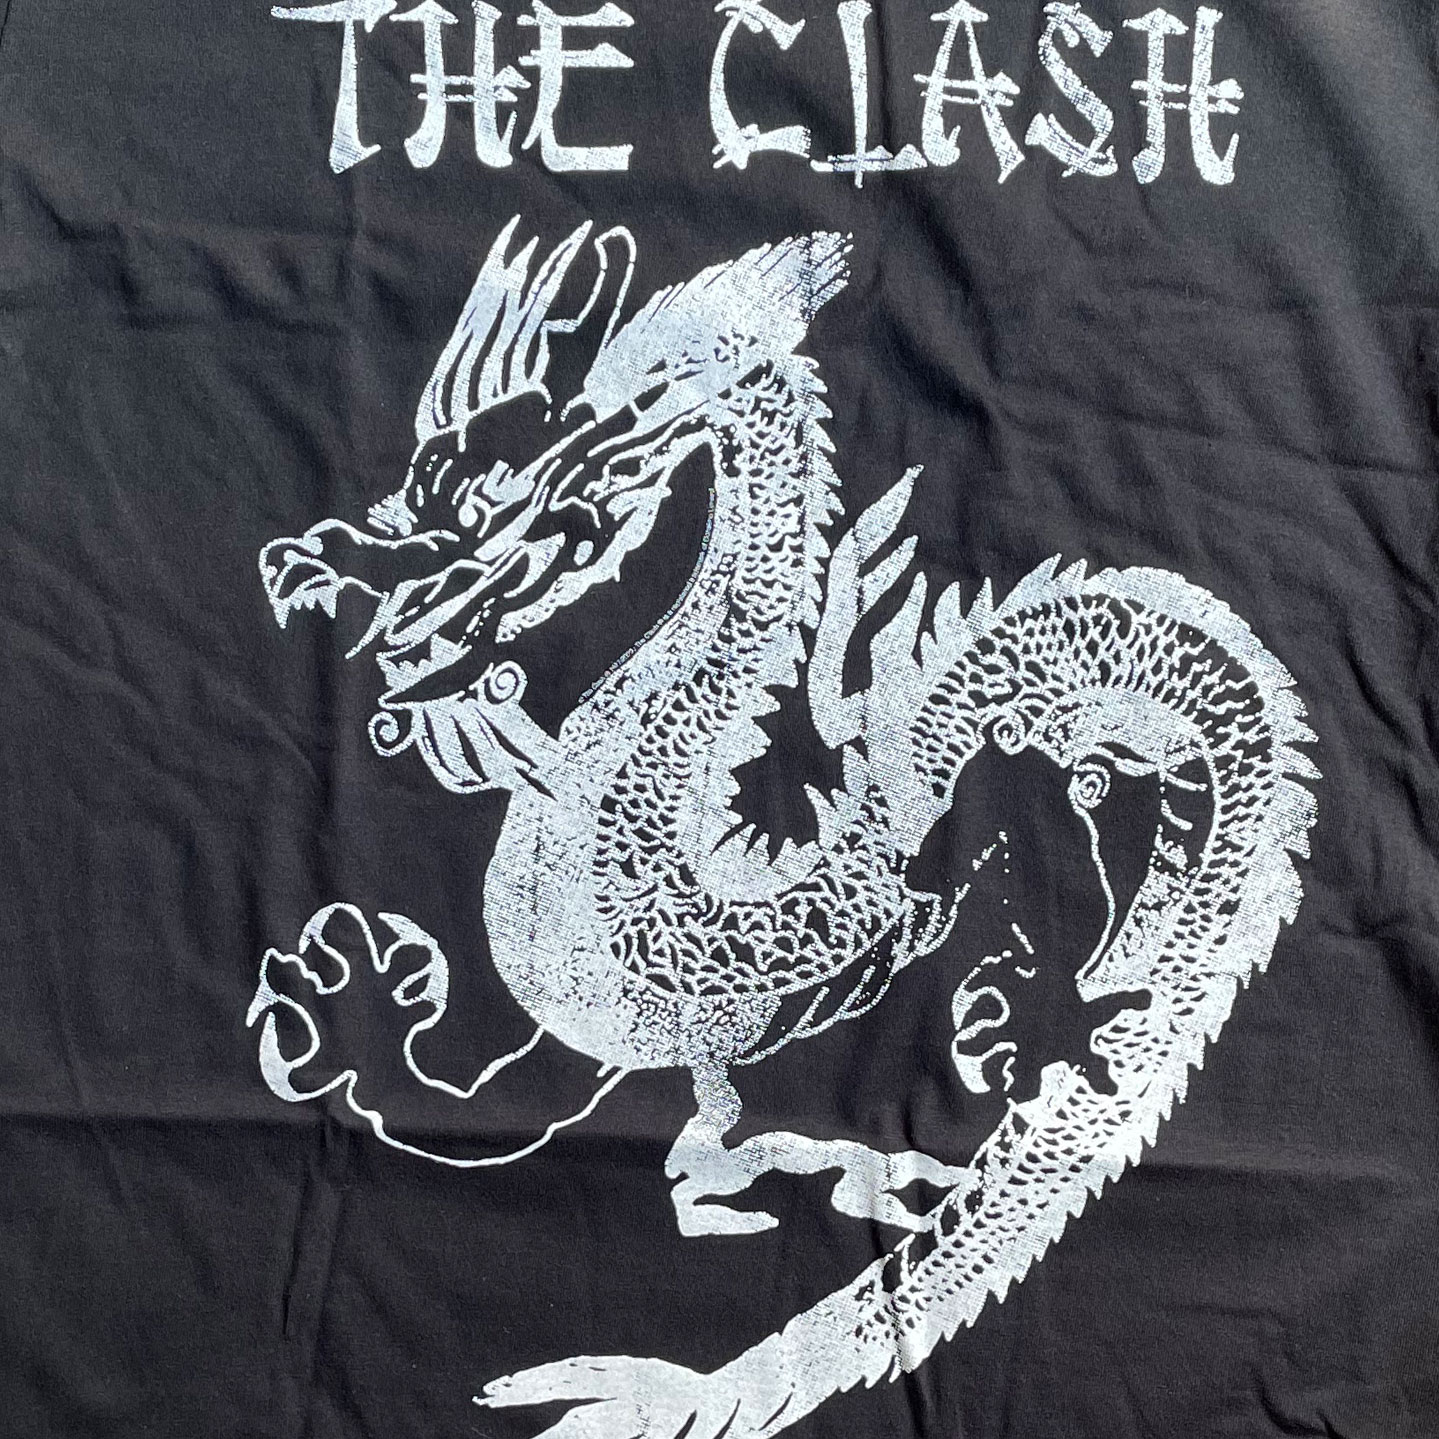 THE CLASH Tシャツ Dragon オフィシャル